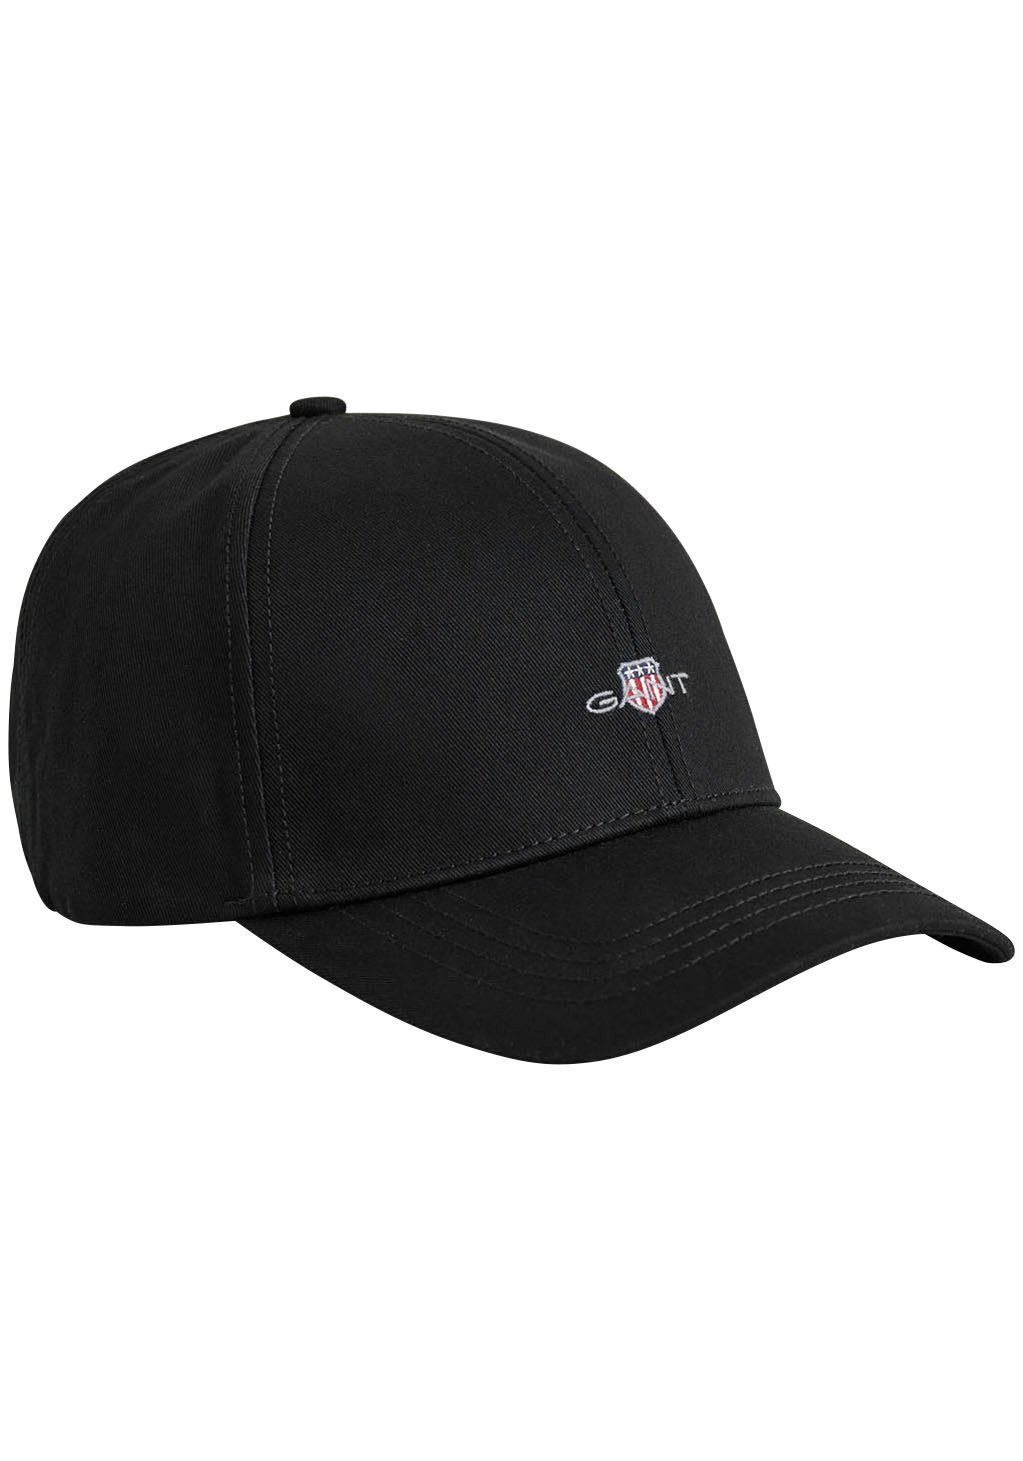 Günstiger Großhandelsverkauf Gant Baseball CAP mit black Cap SHIELD Logostickerei UNISEX. Baumwolle, 100% HIGH vorne, Classic